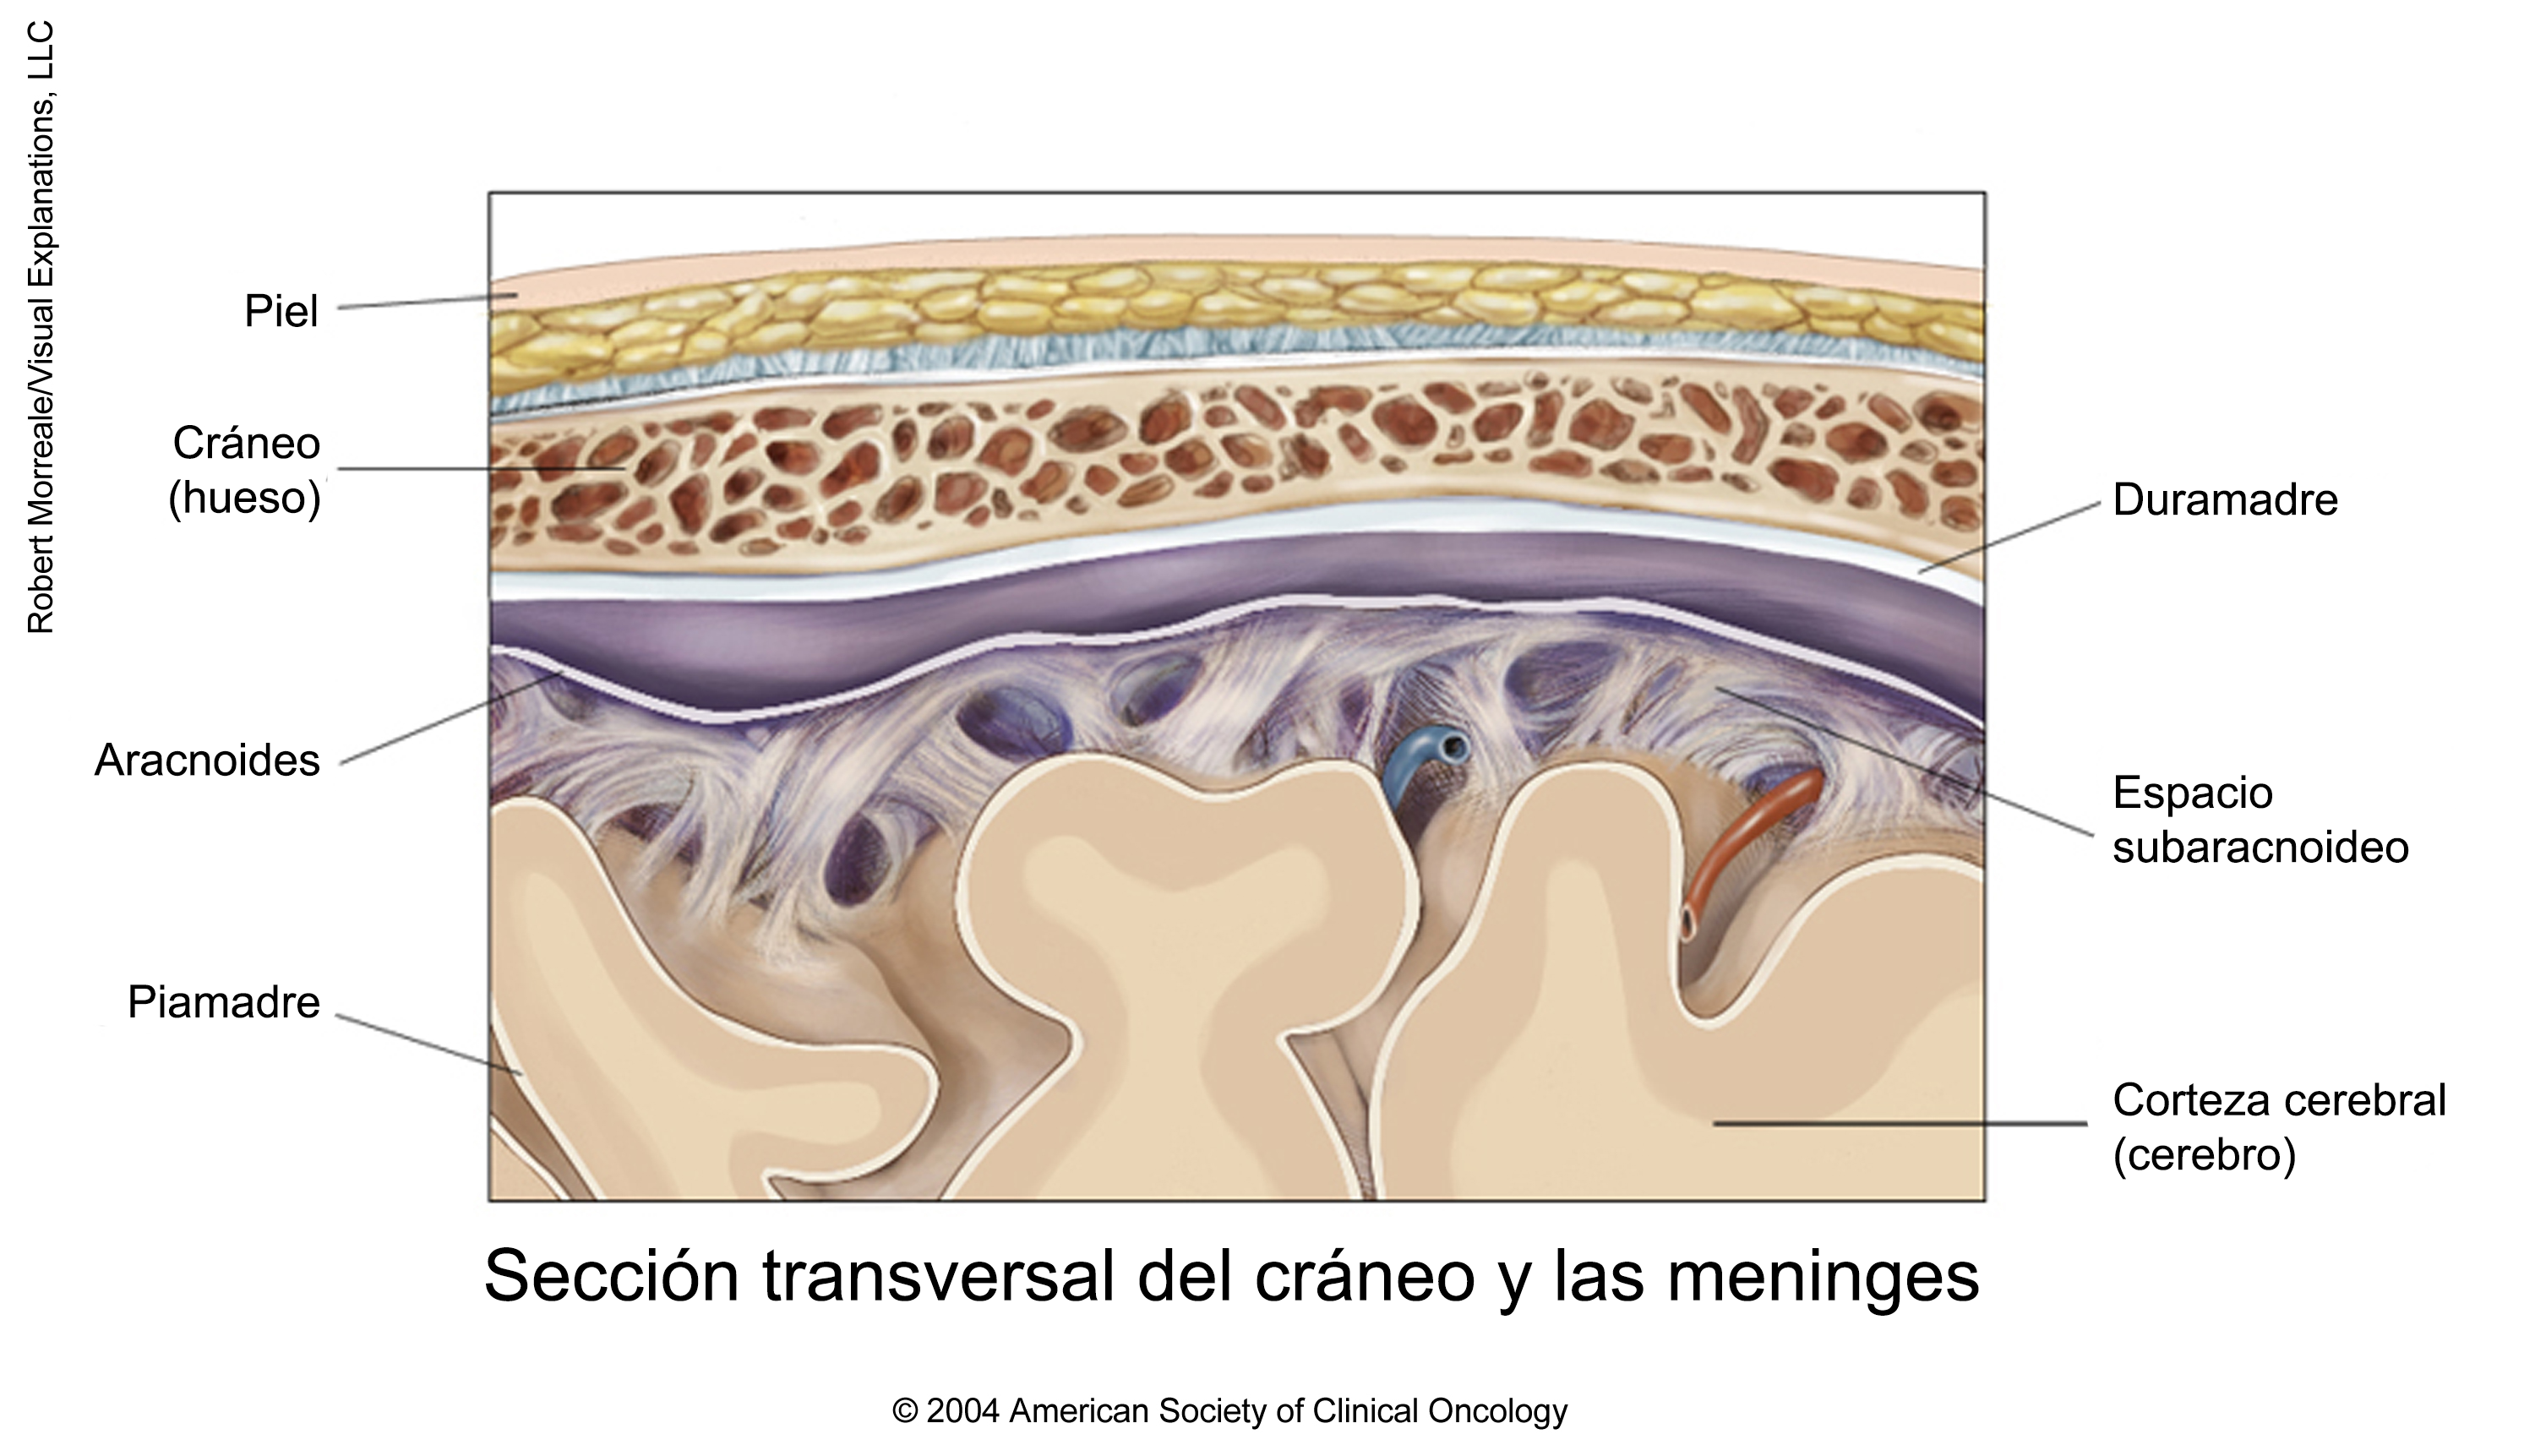 Sección transversal del cráneo y las meninges